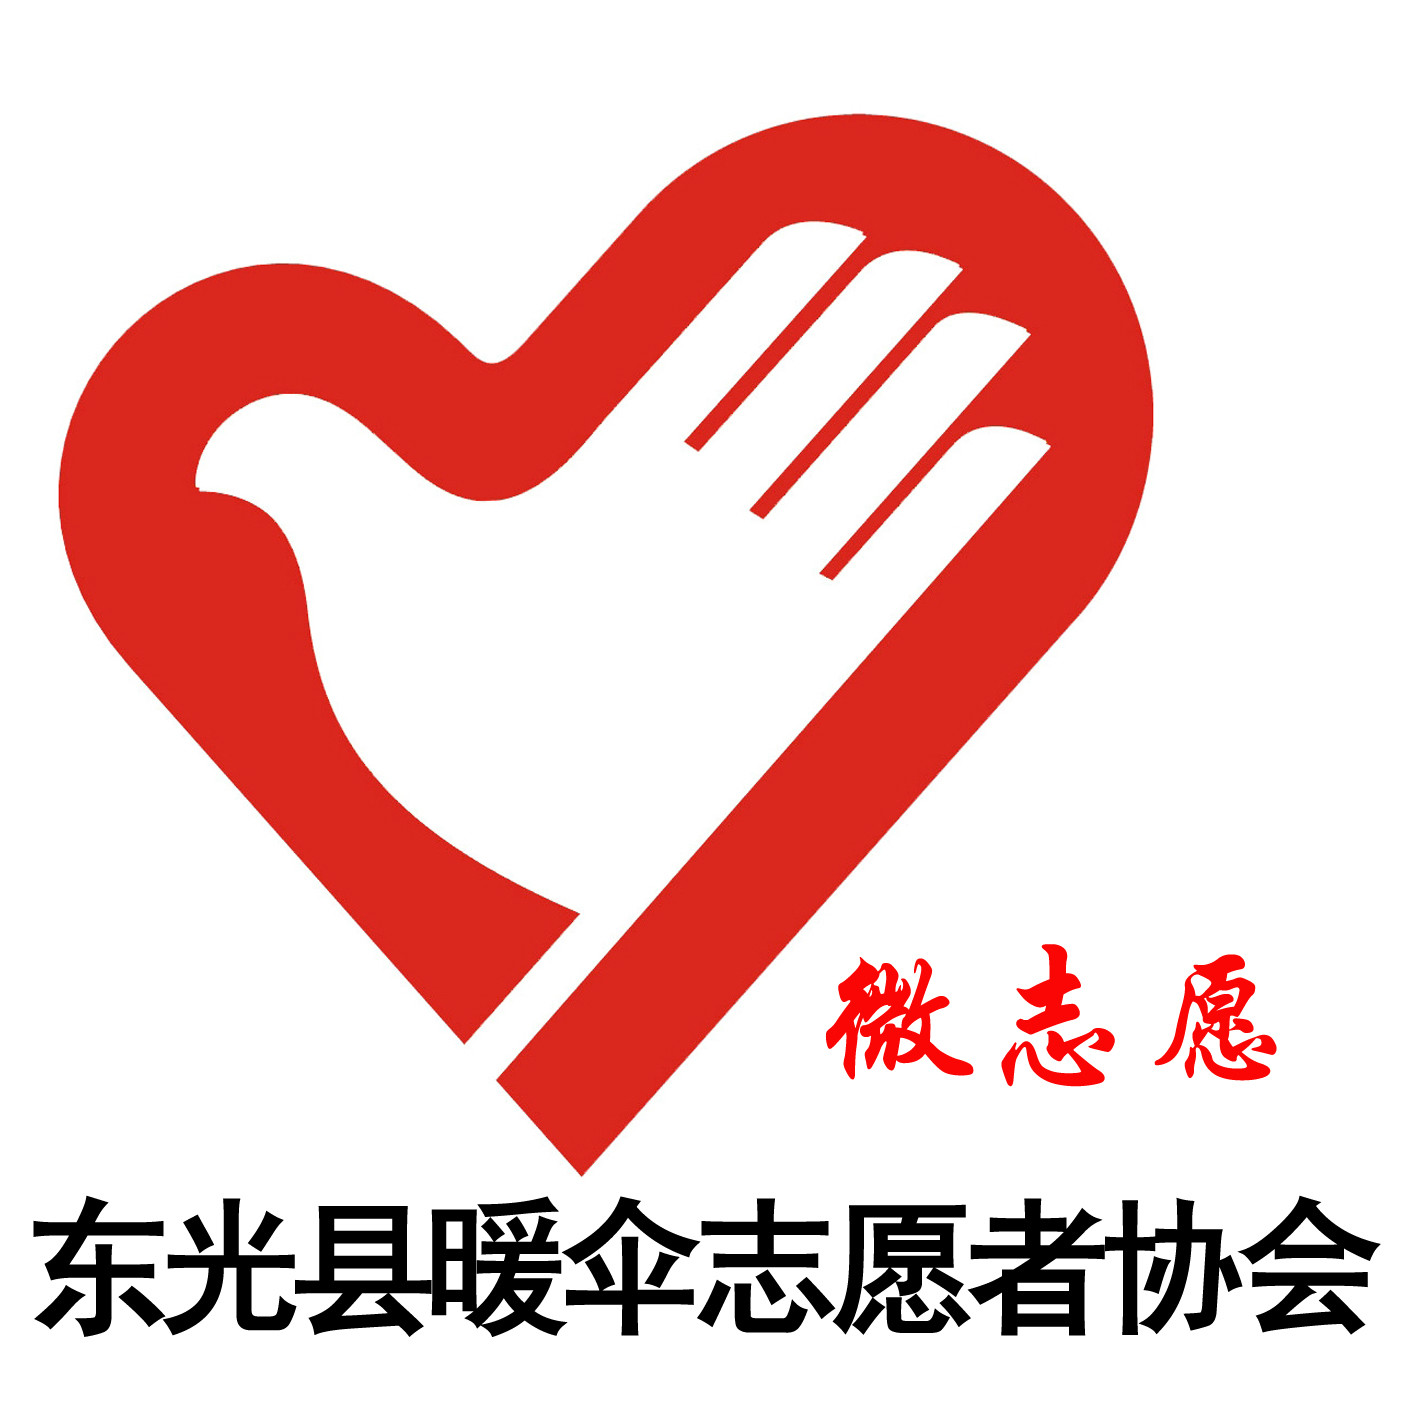 東光縣暖傘志願者協會